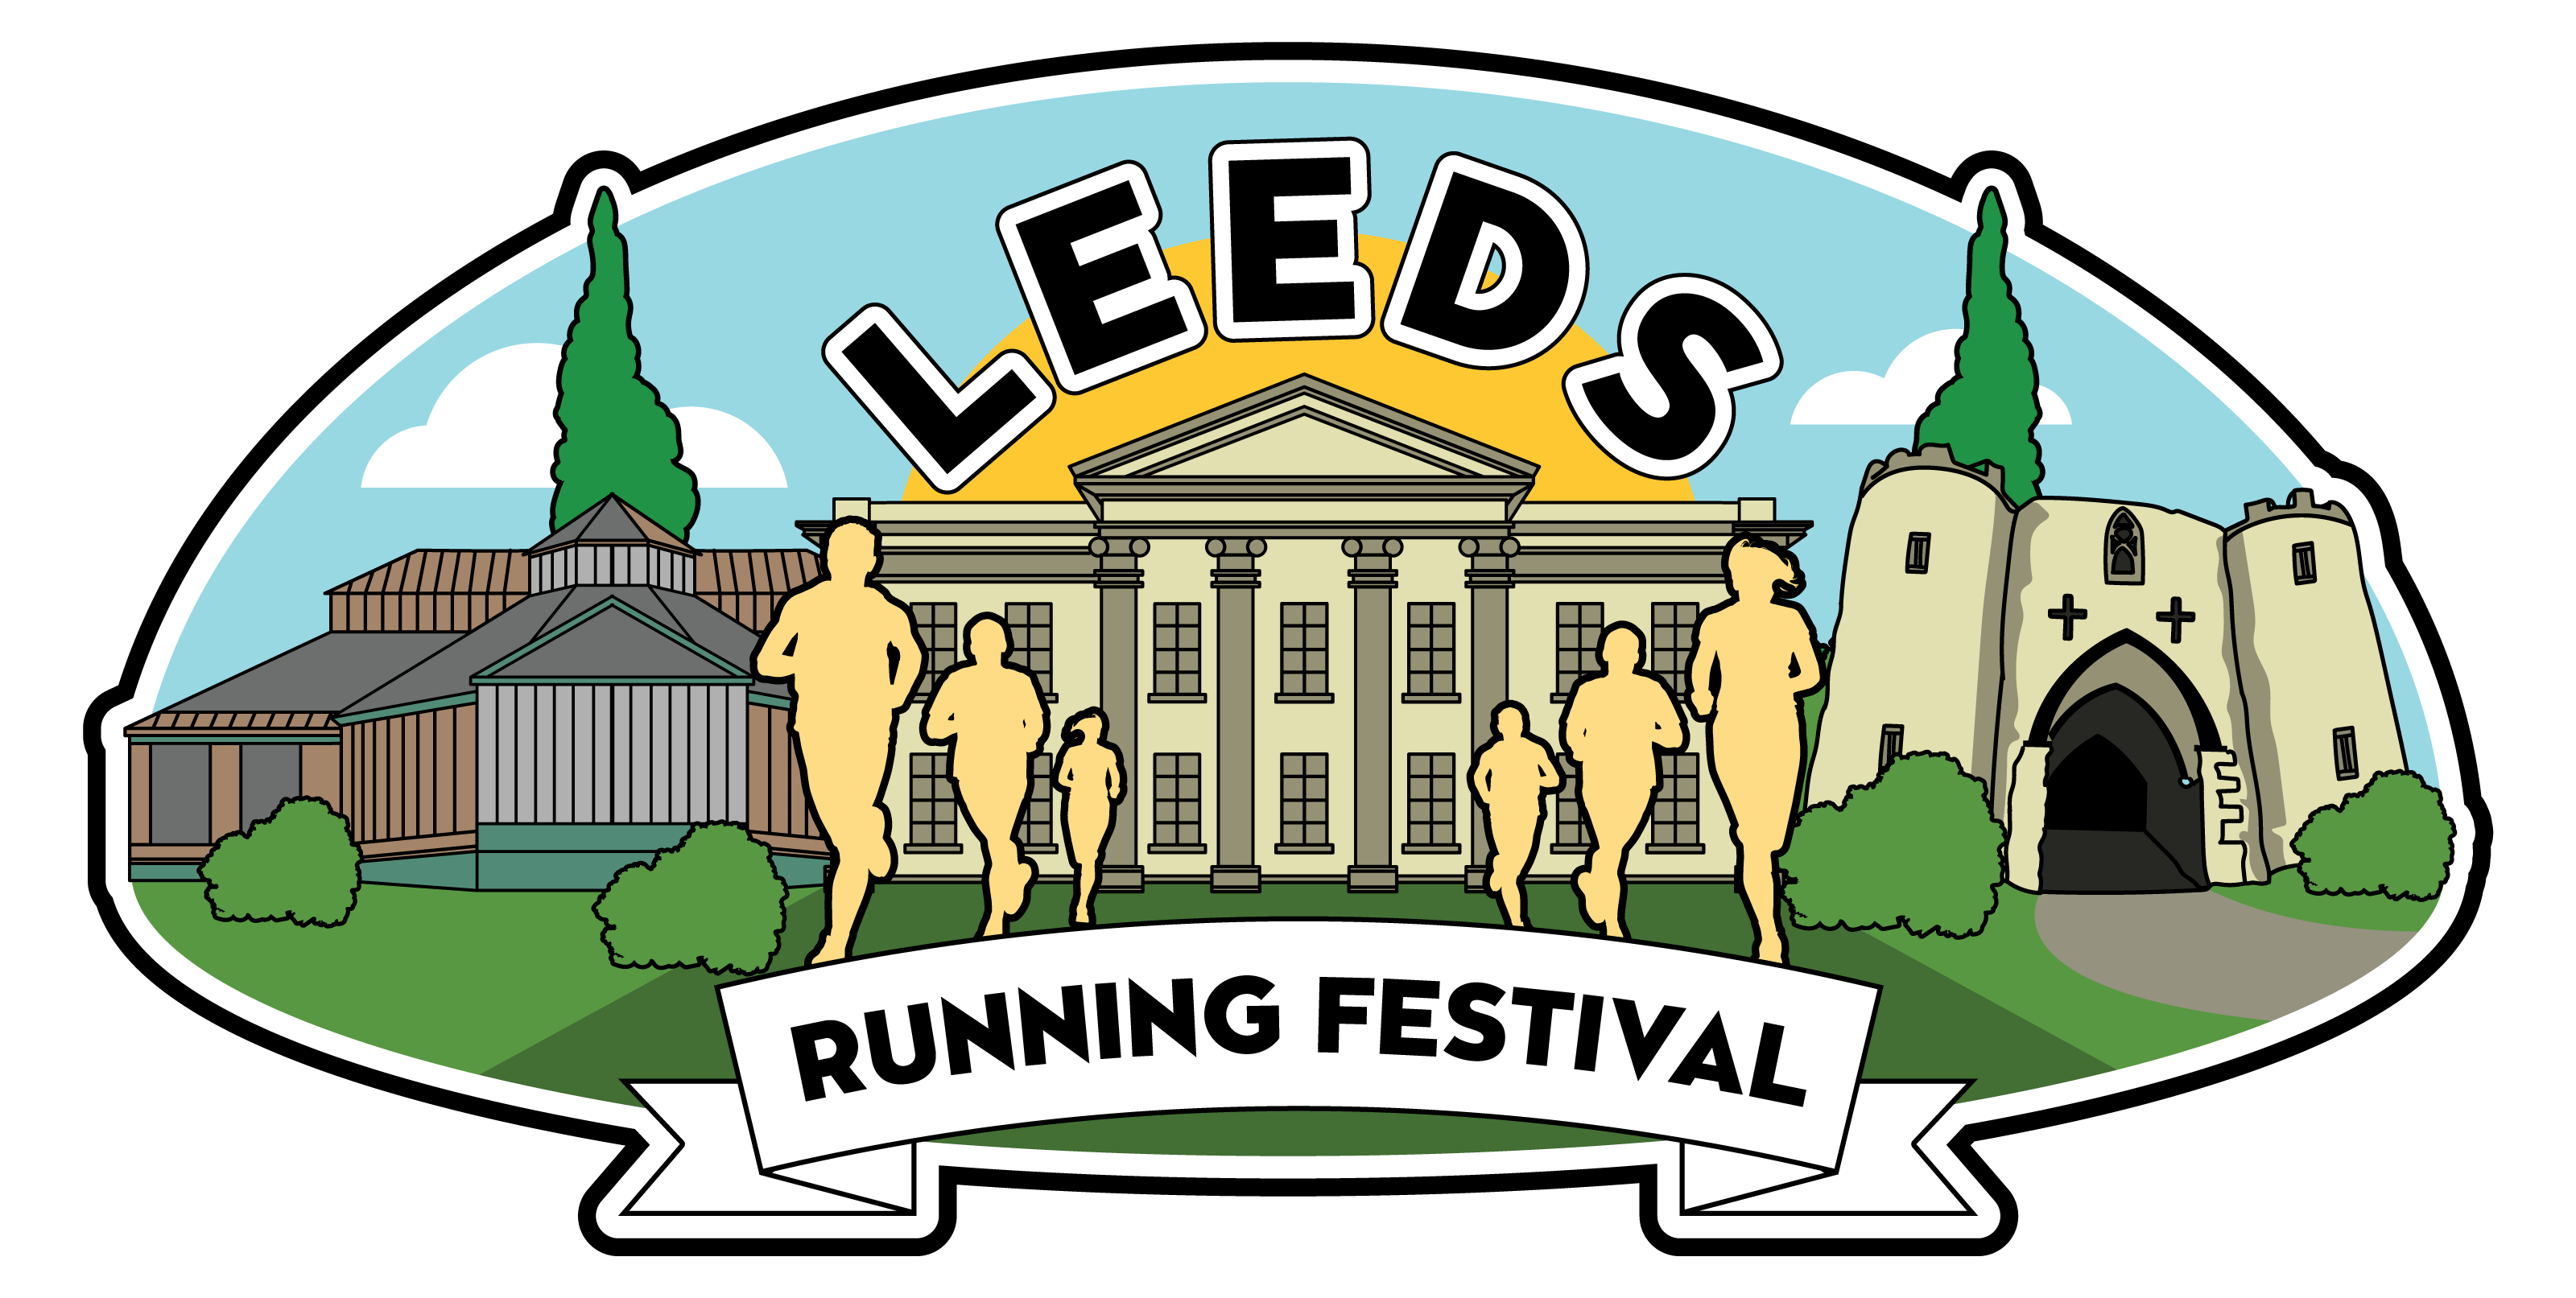 Leeds Running Festival 10K - August